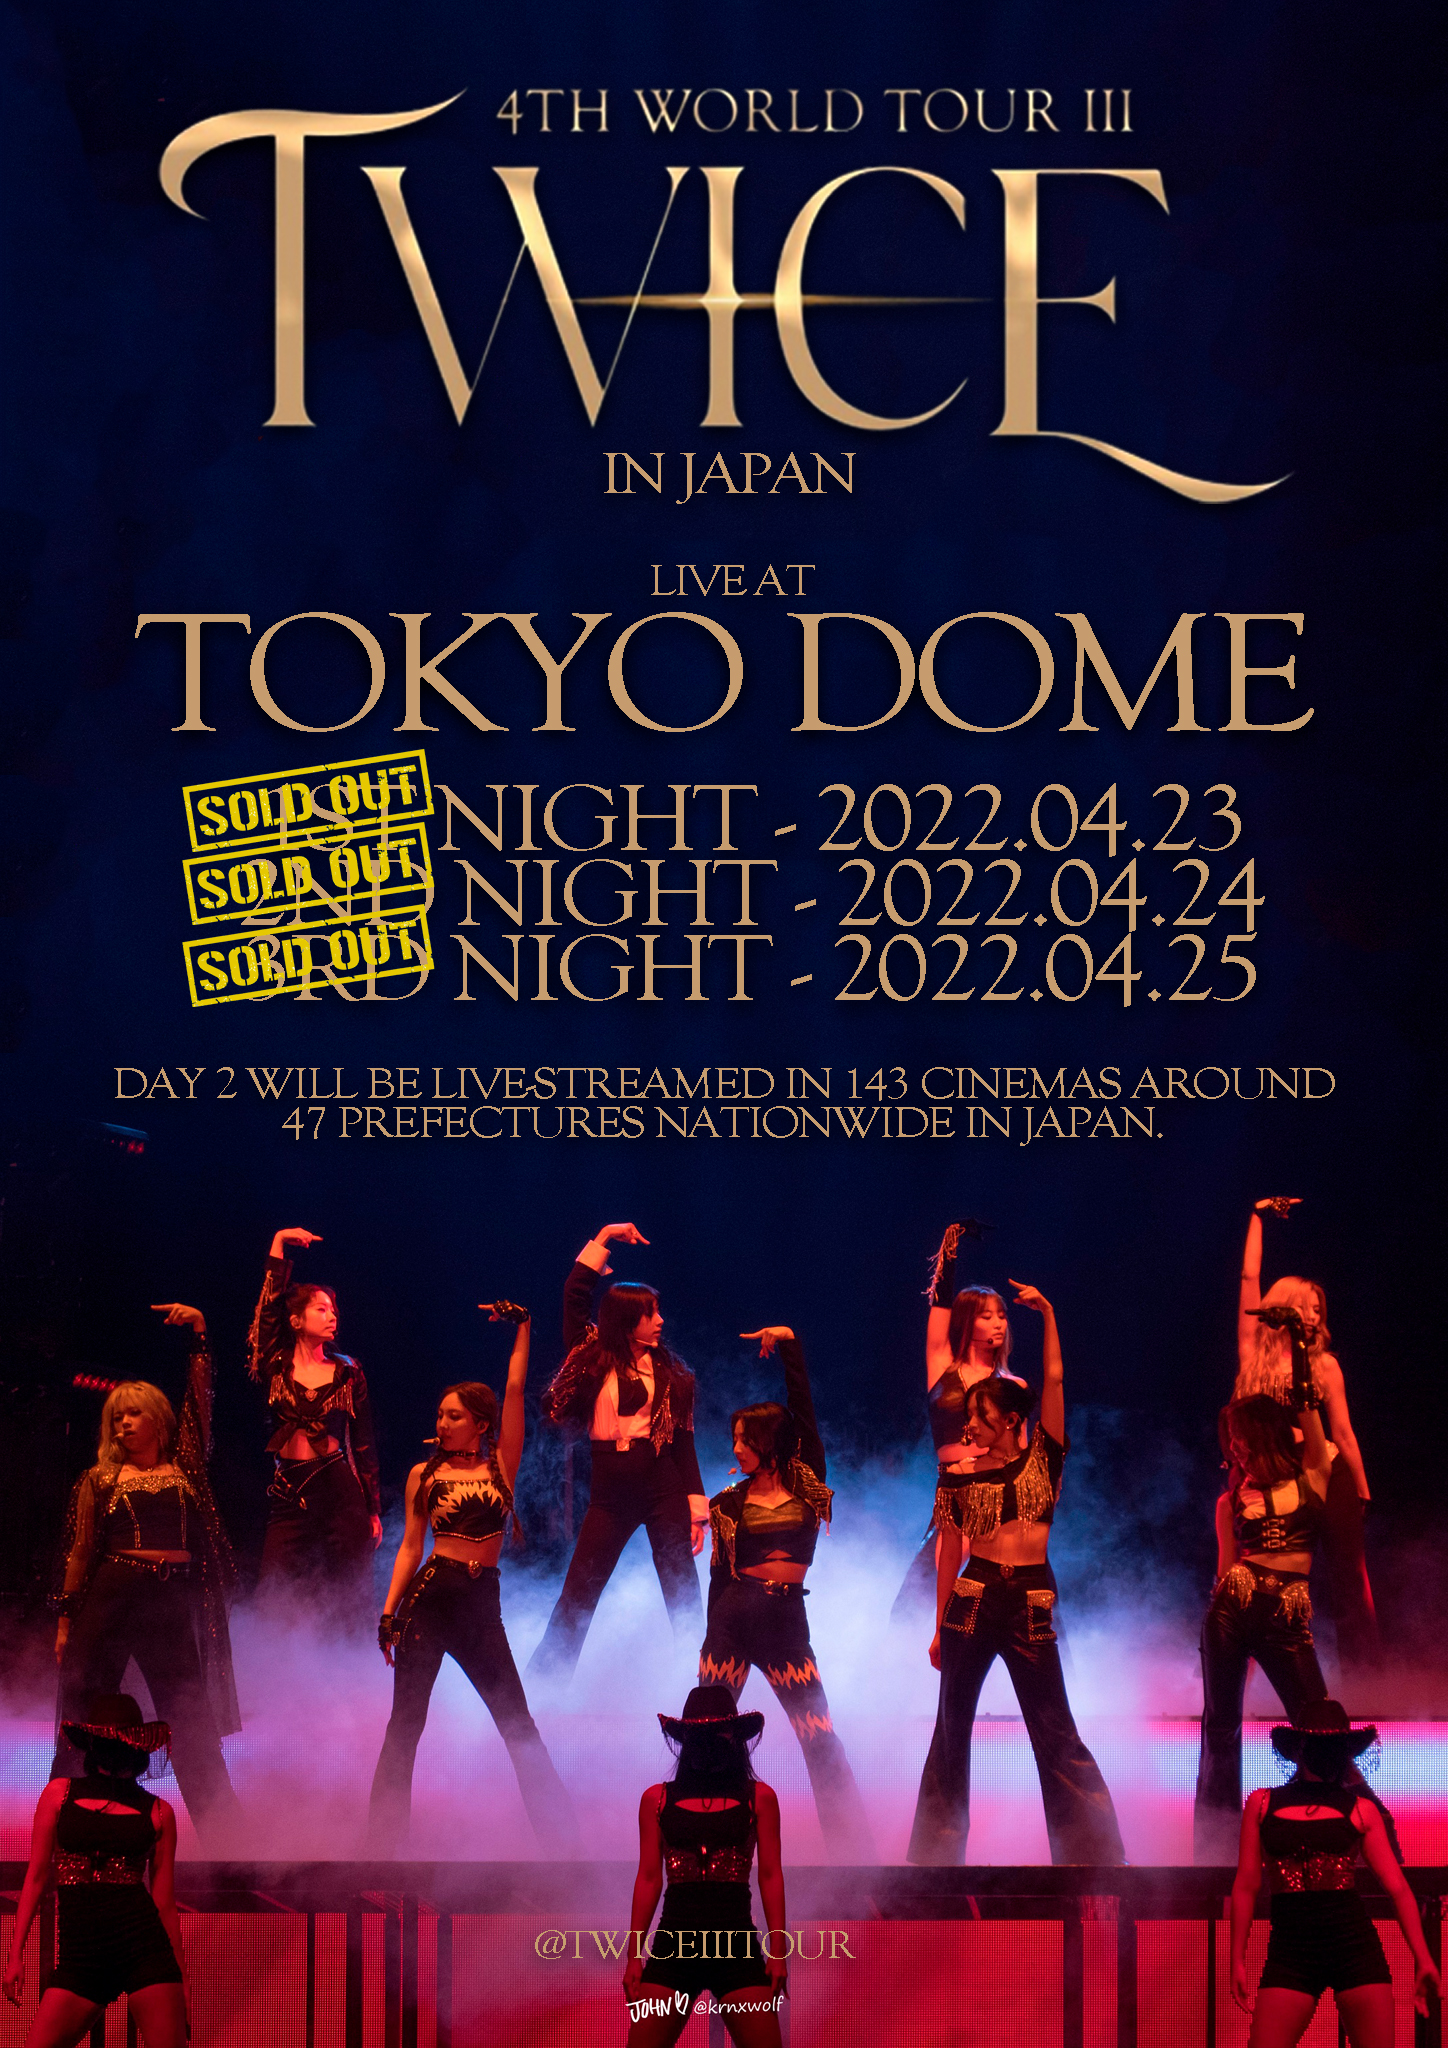 TWICE 4TH WORLD TOUR 'III' IN JAPAN